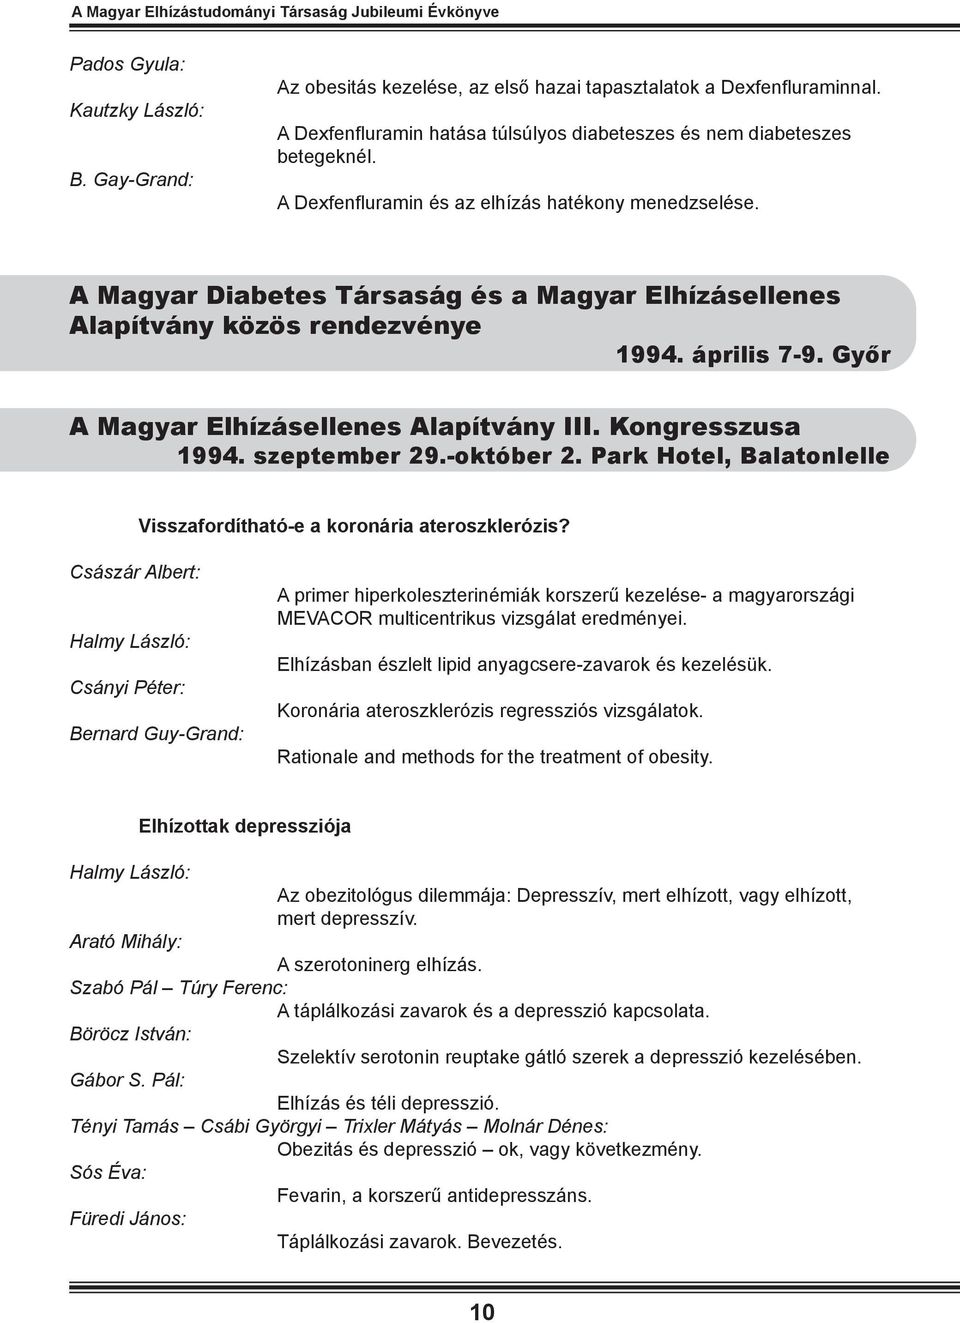 A Magyar Diabetes Társaság és a Magyar Elhízásellenes Alapítvány közös rendezvénye 1994. április 7-9. Győr A Magyar Elhízásellenes Alapítvány III. Kongresszusa 1994. szeptember 29.-október 2.